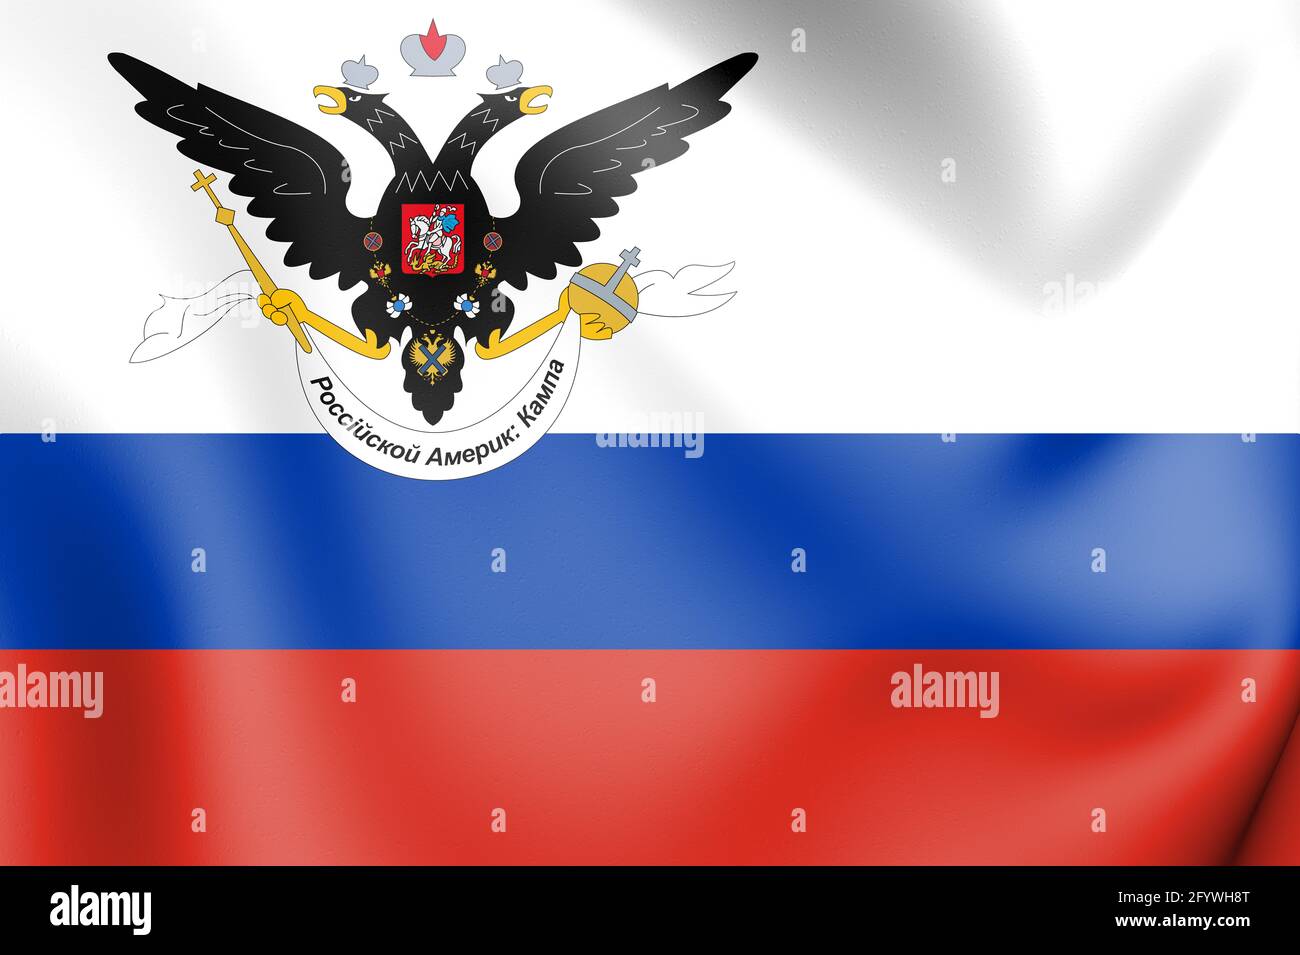 Russian American Company